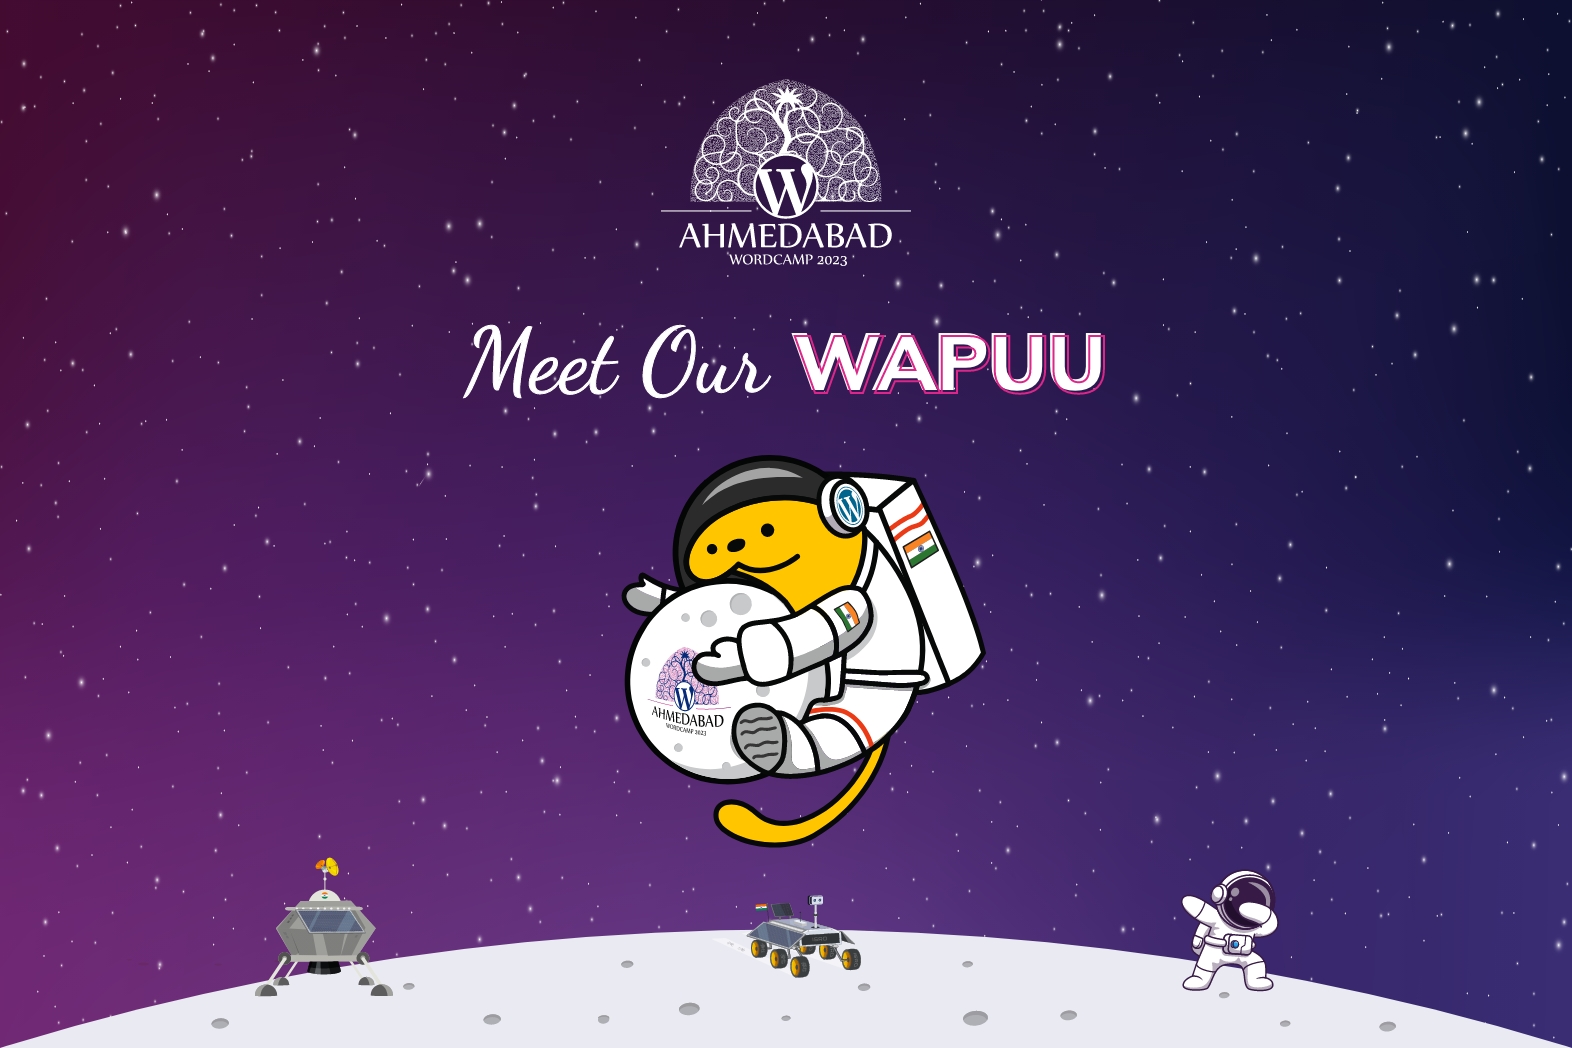 Meet our Wapuu